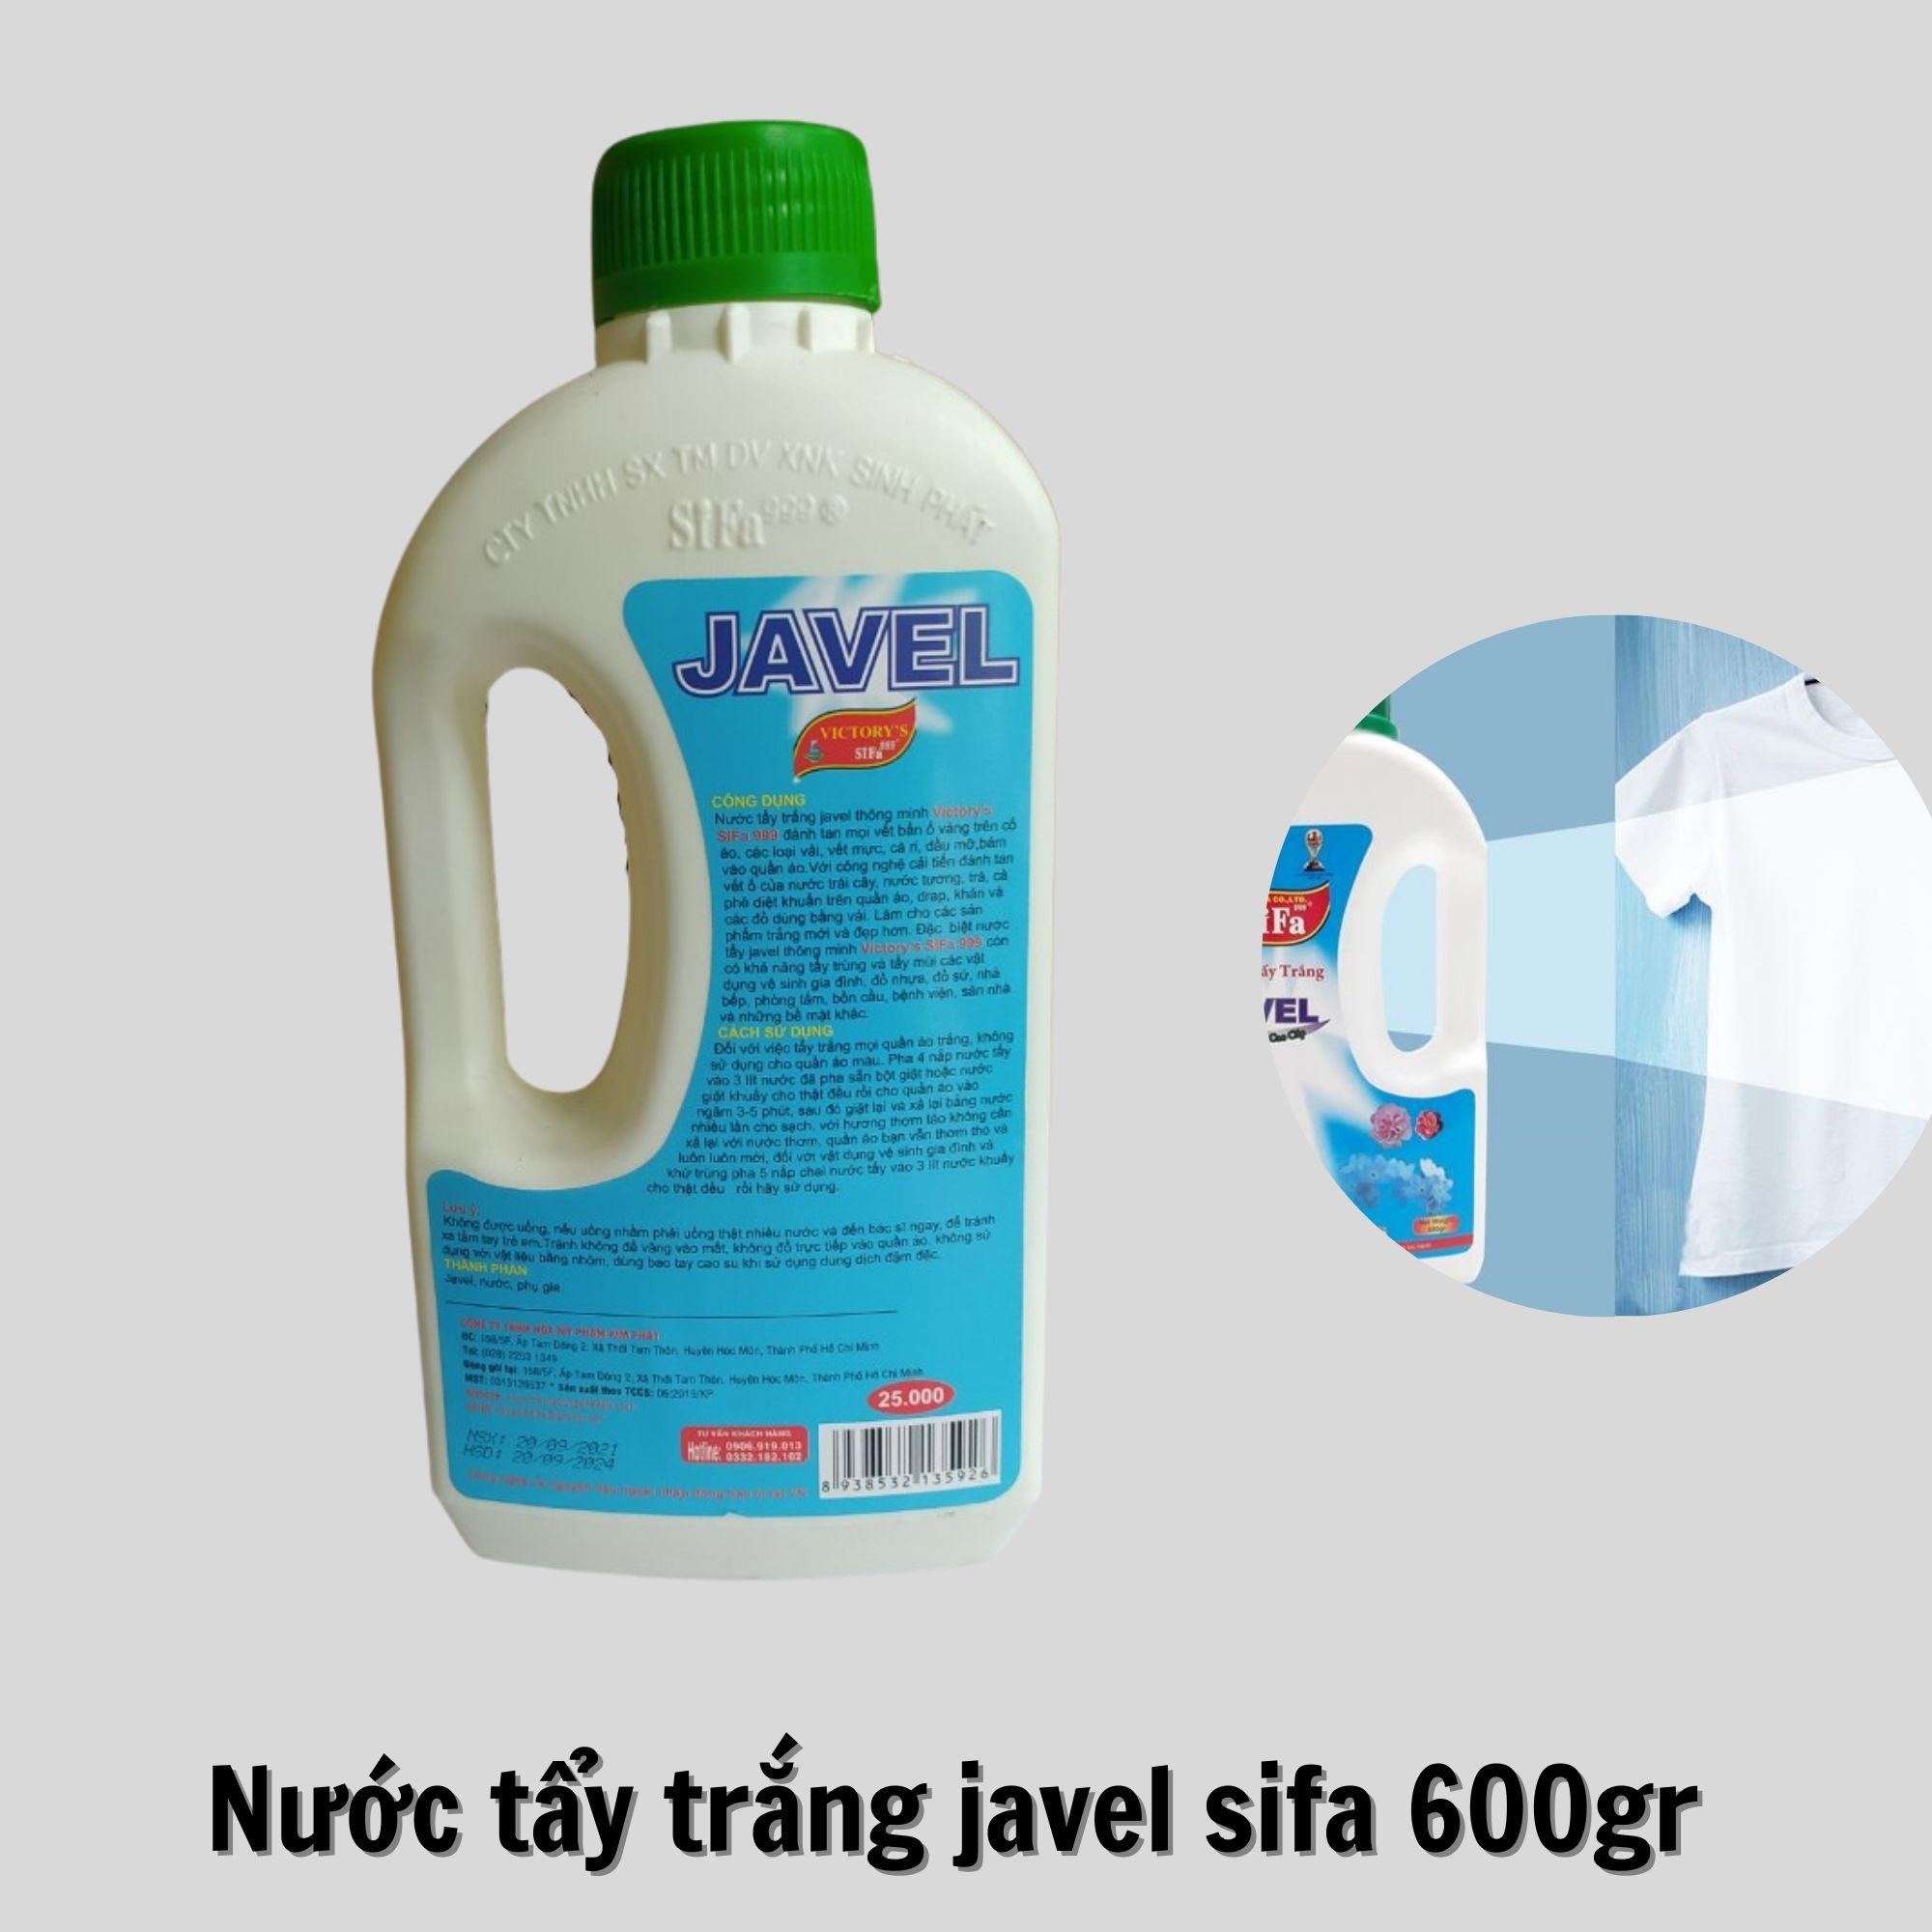 Nước tẩy trắng Javel thông minh Sifa ( tẩy trắng quần áo, đồ chất liệu vải ) cao cấp